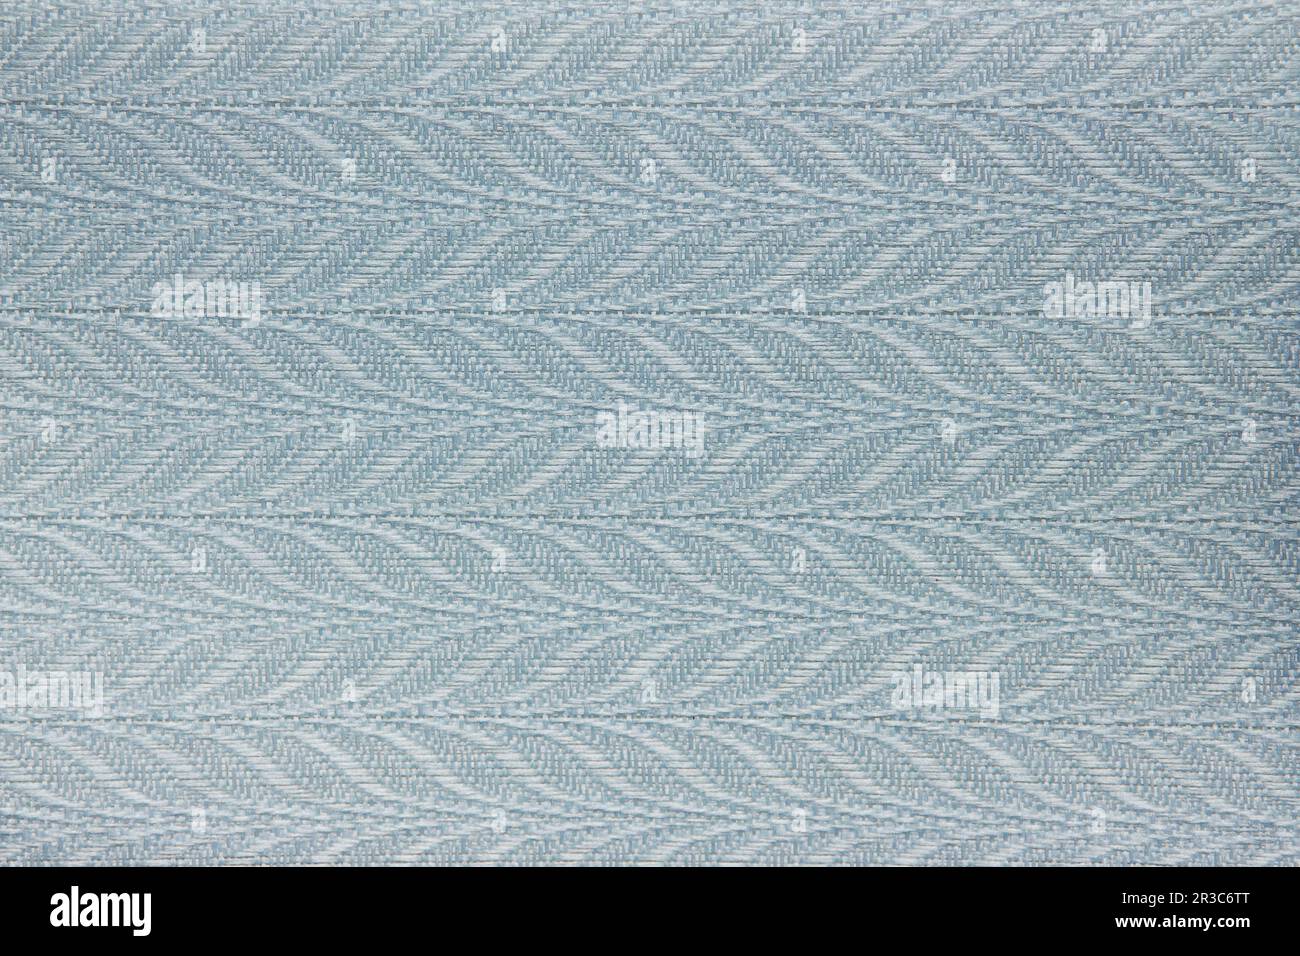 Fond de texture rideau aveugle en tissu gris pouvant être utilisé pour la toile de fond ou couvercle Banque D'Images